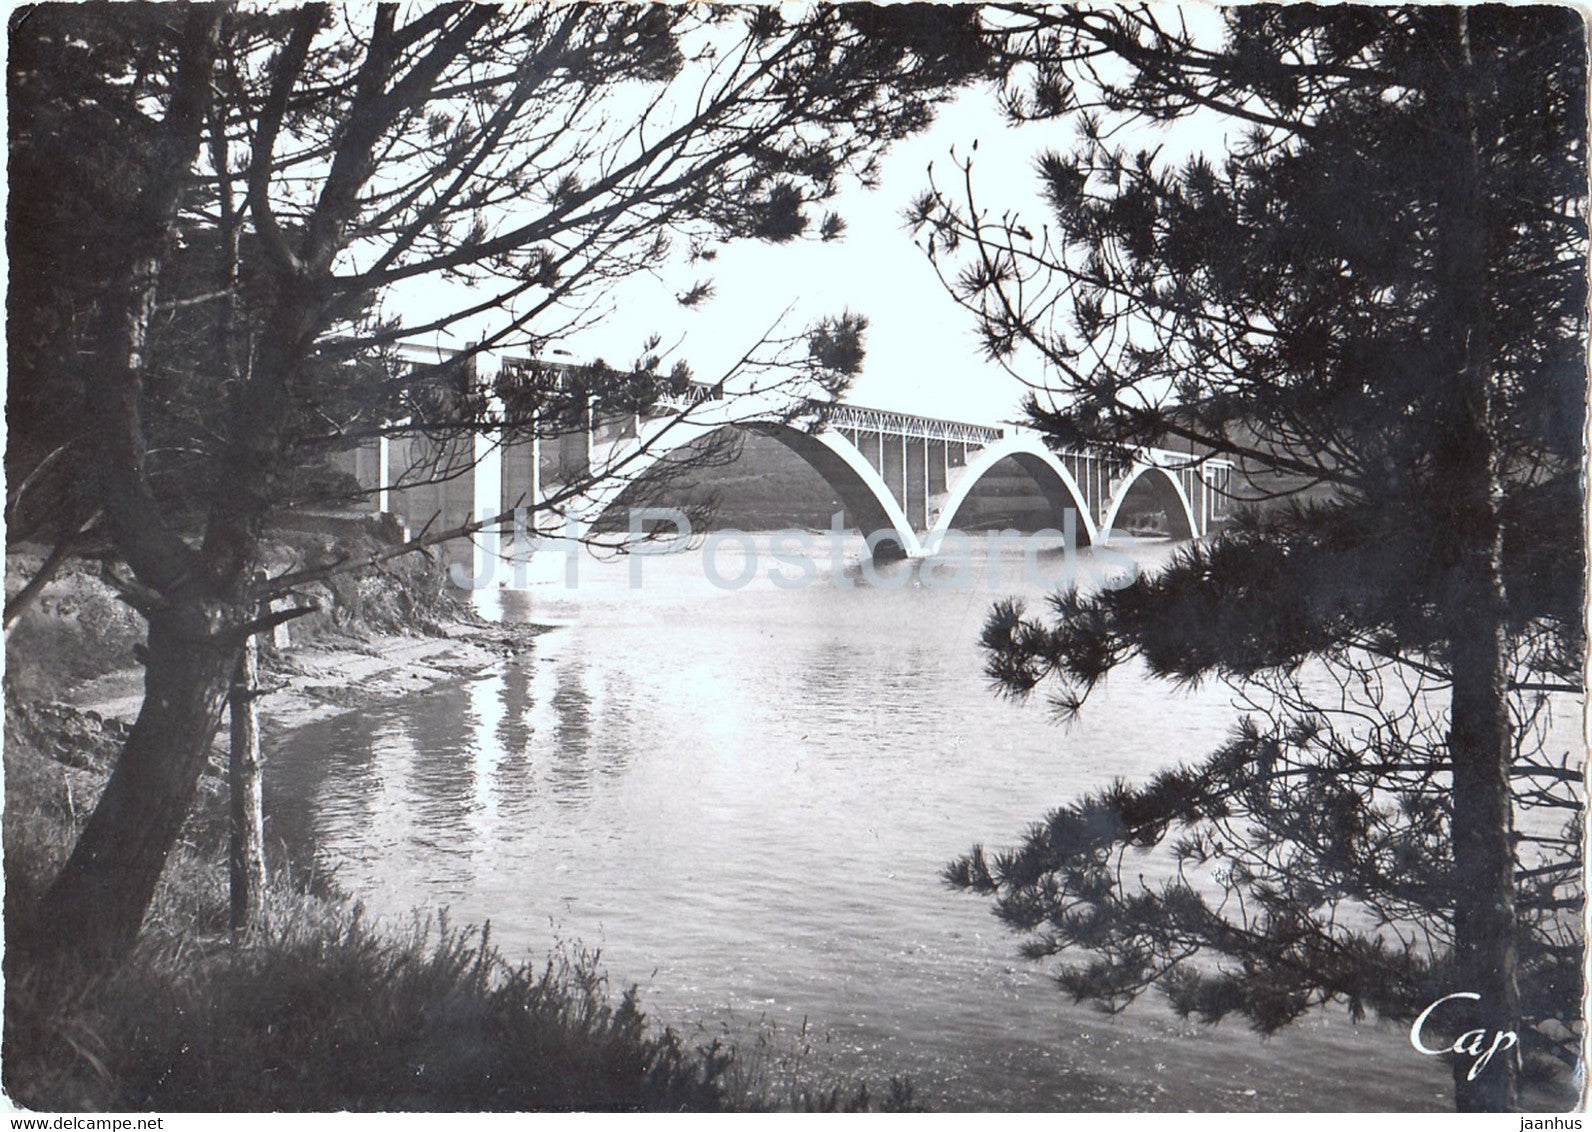 Brest - Pont de Plougastel - Daoulas a travers les Pins - bridge - France - unused - JH Postcards